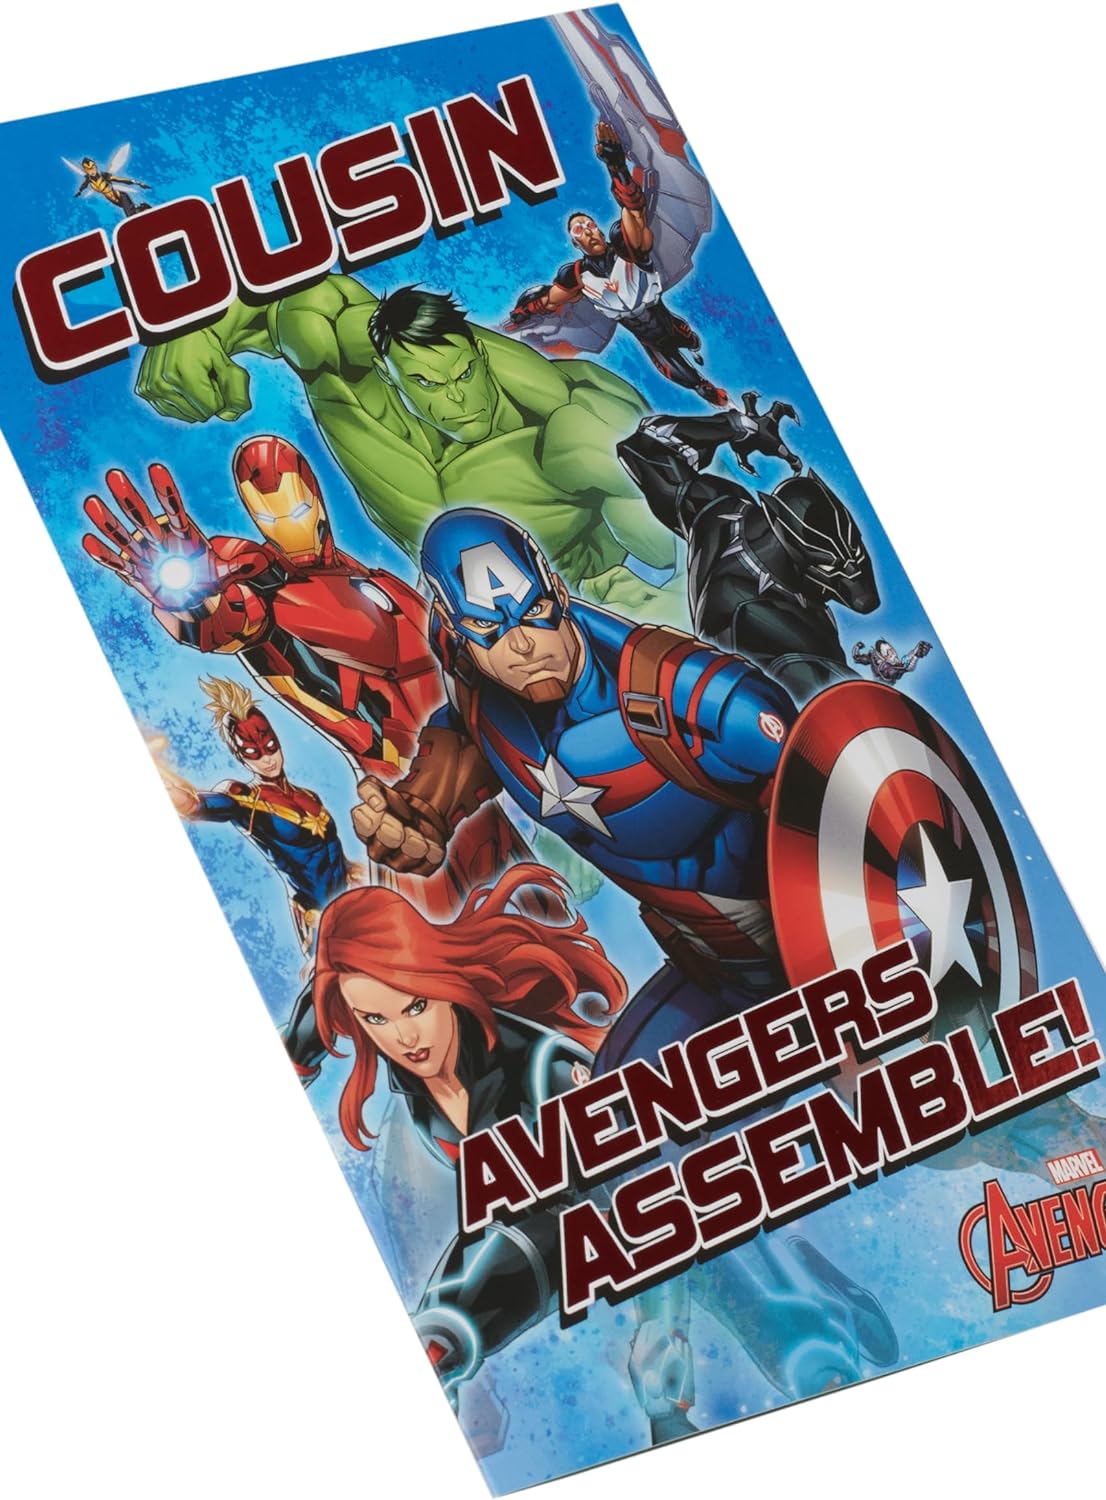 Marvel The Avengers Assemble Design Cousin Birthday Card